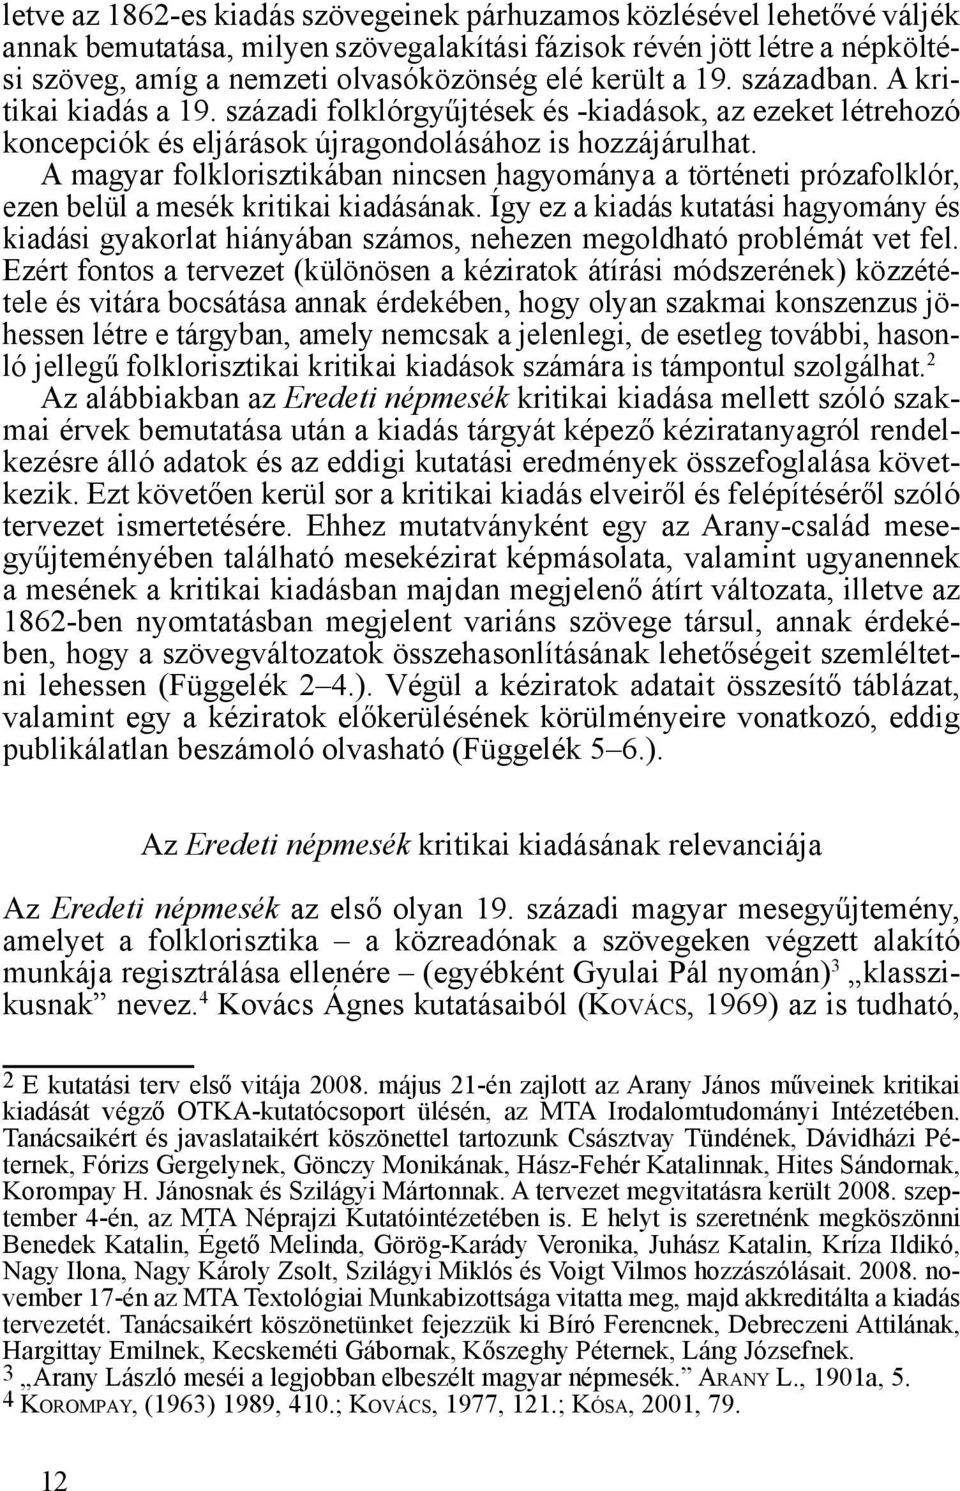 A magyar folklorisztikában nincsen hagyománya a történeti prózafolklór, ezen belül a mesék kritikai kiadásának.